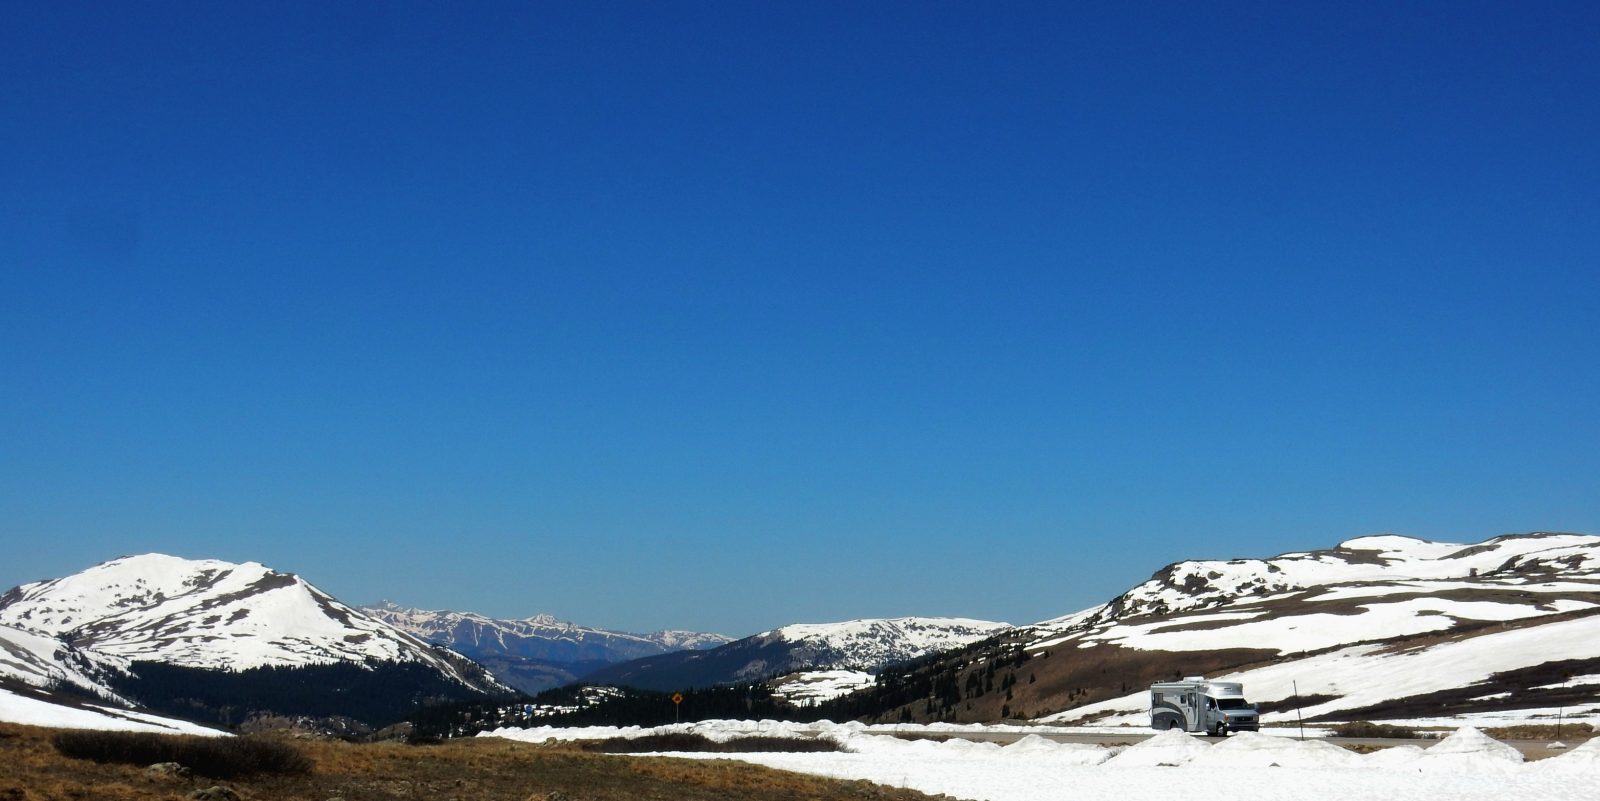 Colorado Dream List: Ever Dream of Climbing a 14,000-Foot Peak?